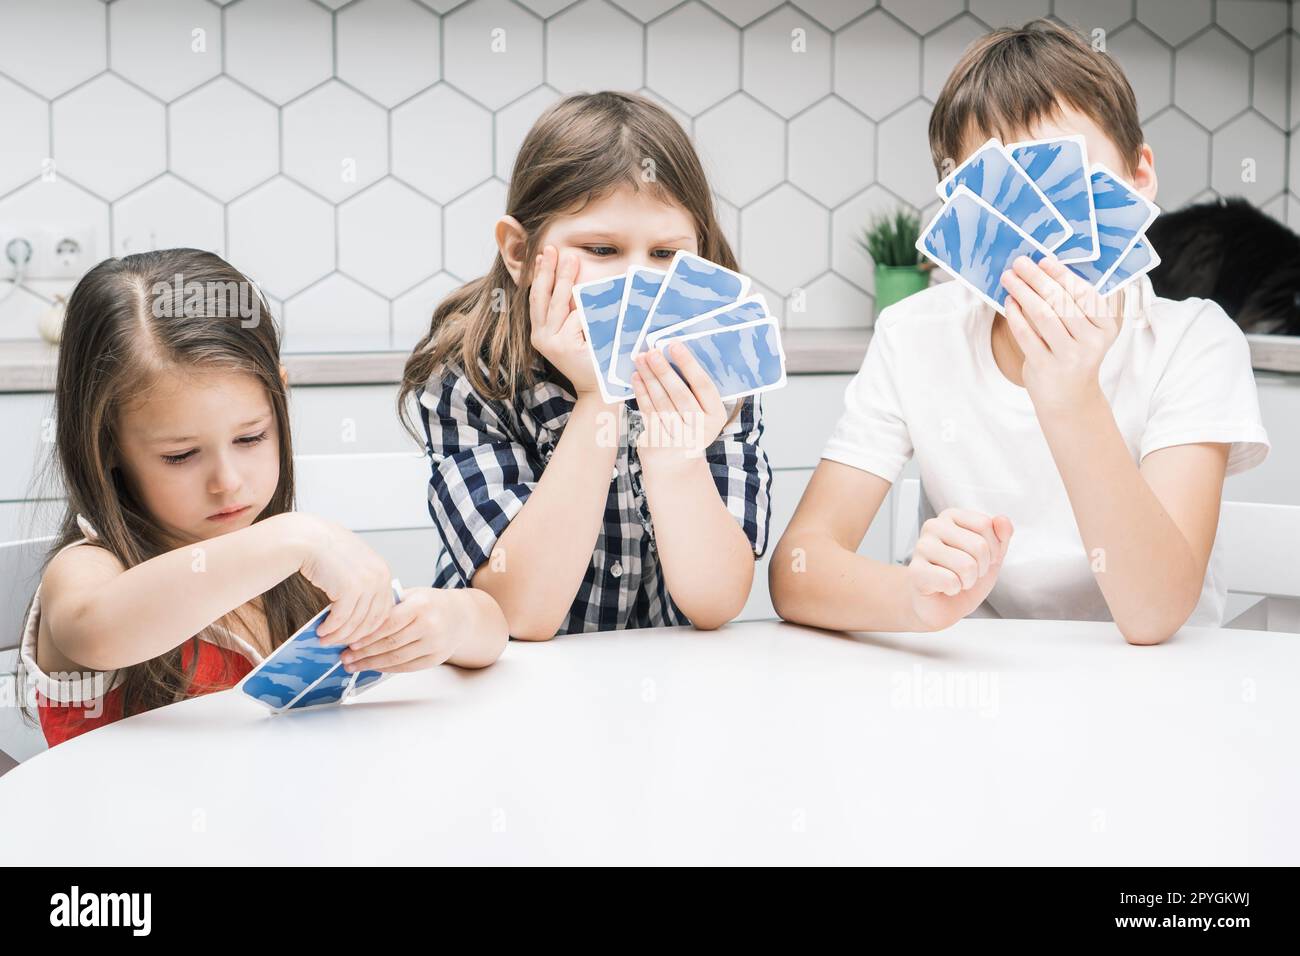 Drôle de photo trois enfants regardant des cartes à jouer bleues dans les mains avec déception et inquiétude, assis à la table blanche Banque D'Images